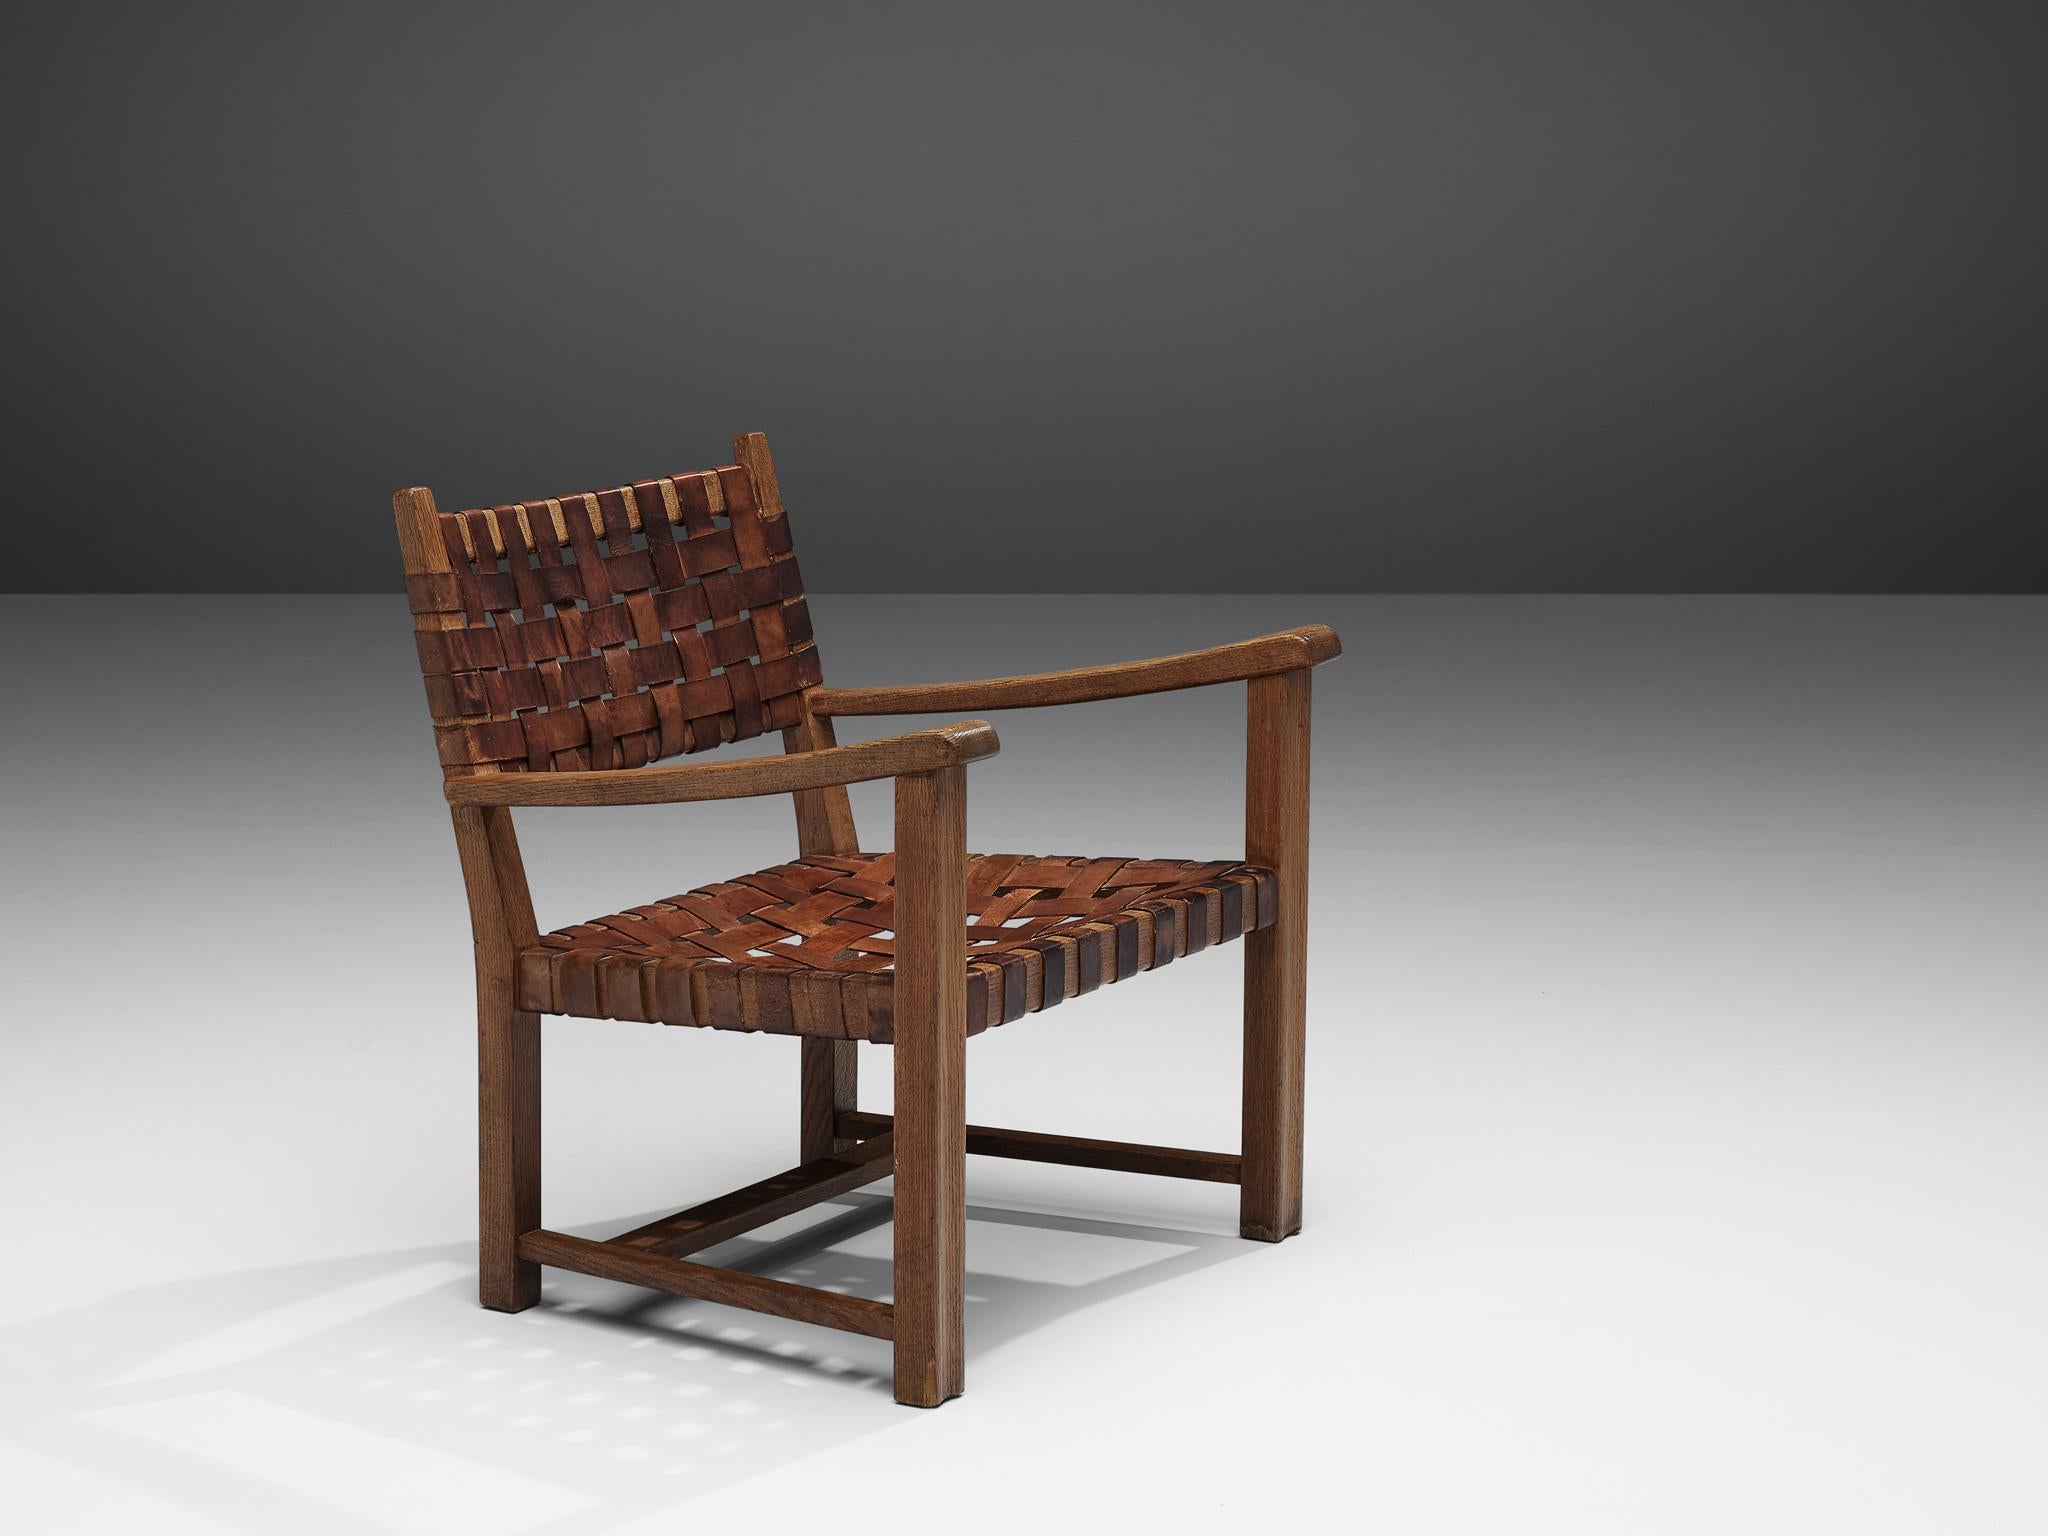 Fauteuil, cuir cognac, chêne massif, Europe, années 1960

Magnifique fauteuil en chêne massif. Ce fauteuil a un aspect rustique grâce à sa structure en chêne robuste. Les accoudoirs sont légèrement incurvés avec des bords arrondis. Le grain du bois